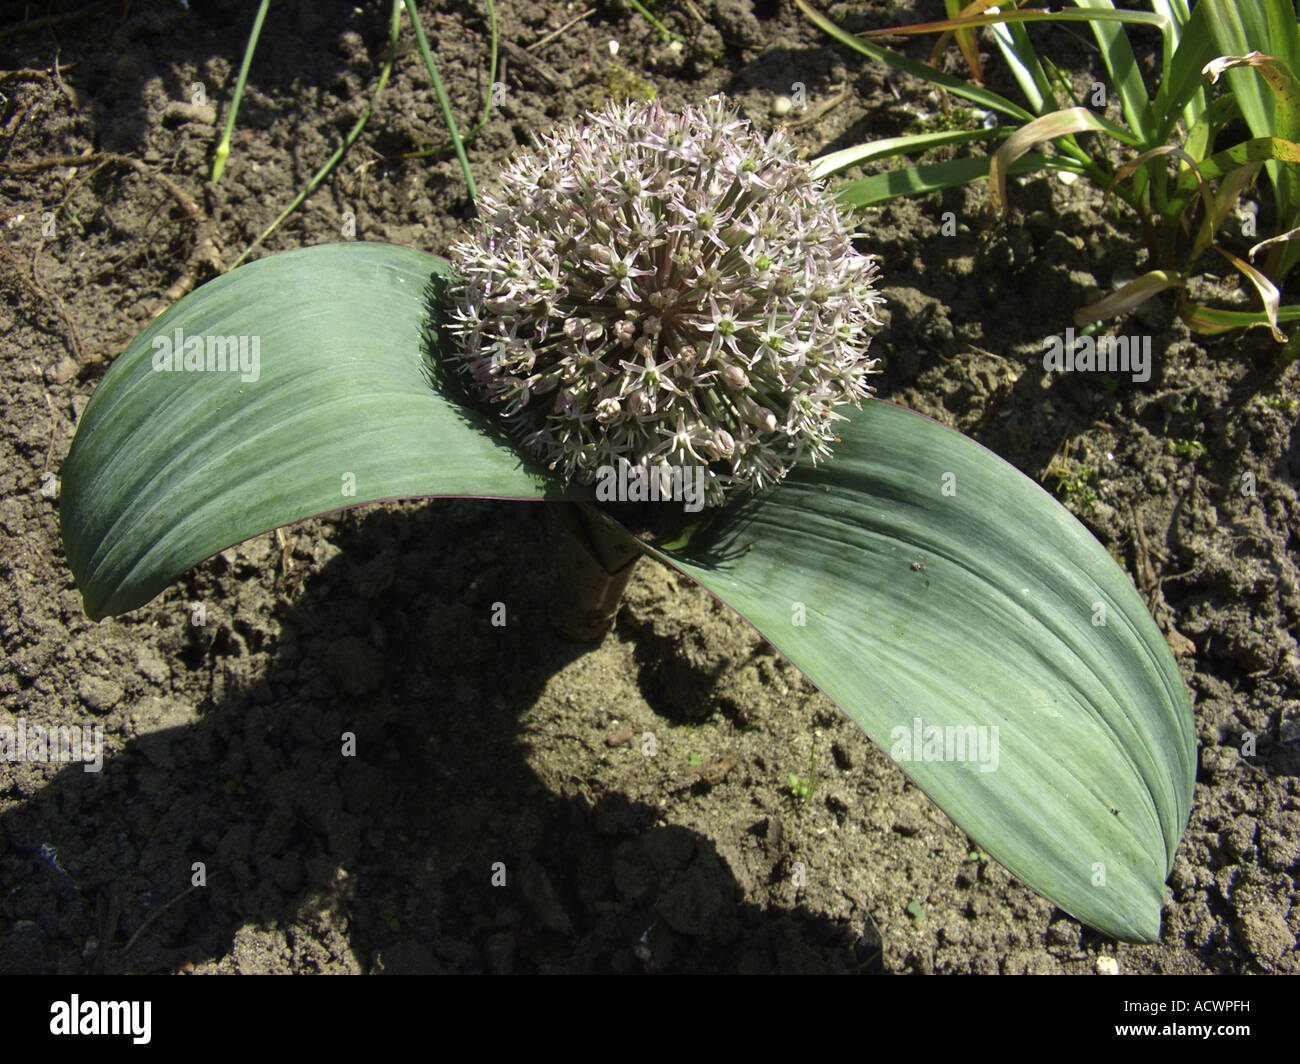 Turkestan Allium (Allium karataviense), blooming Stock Photo